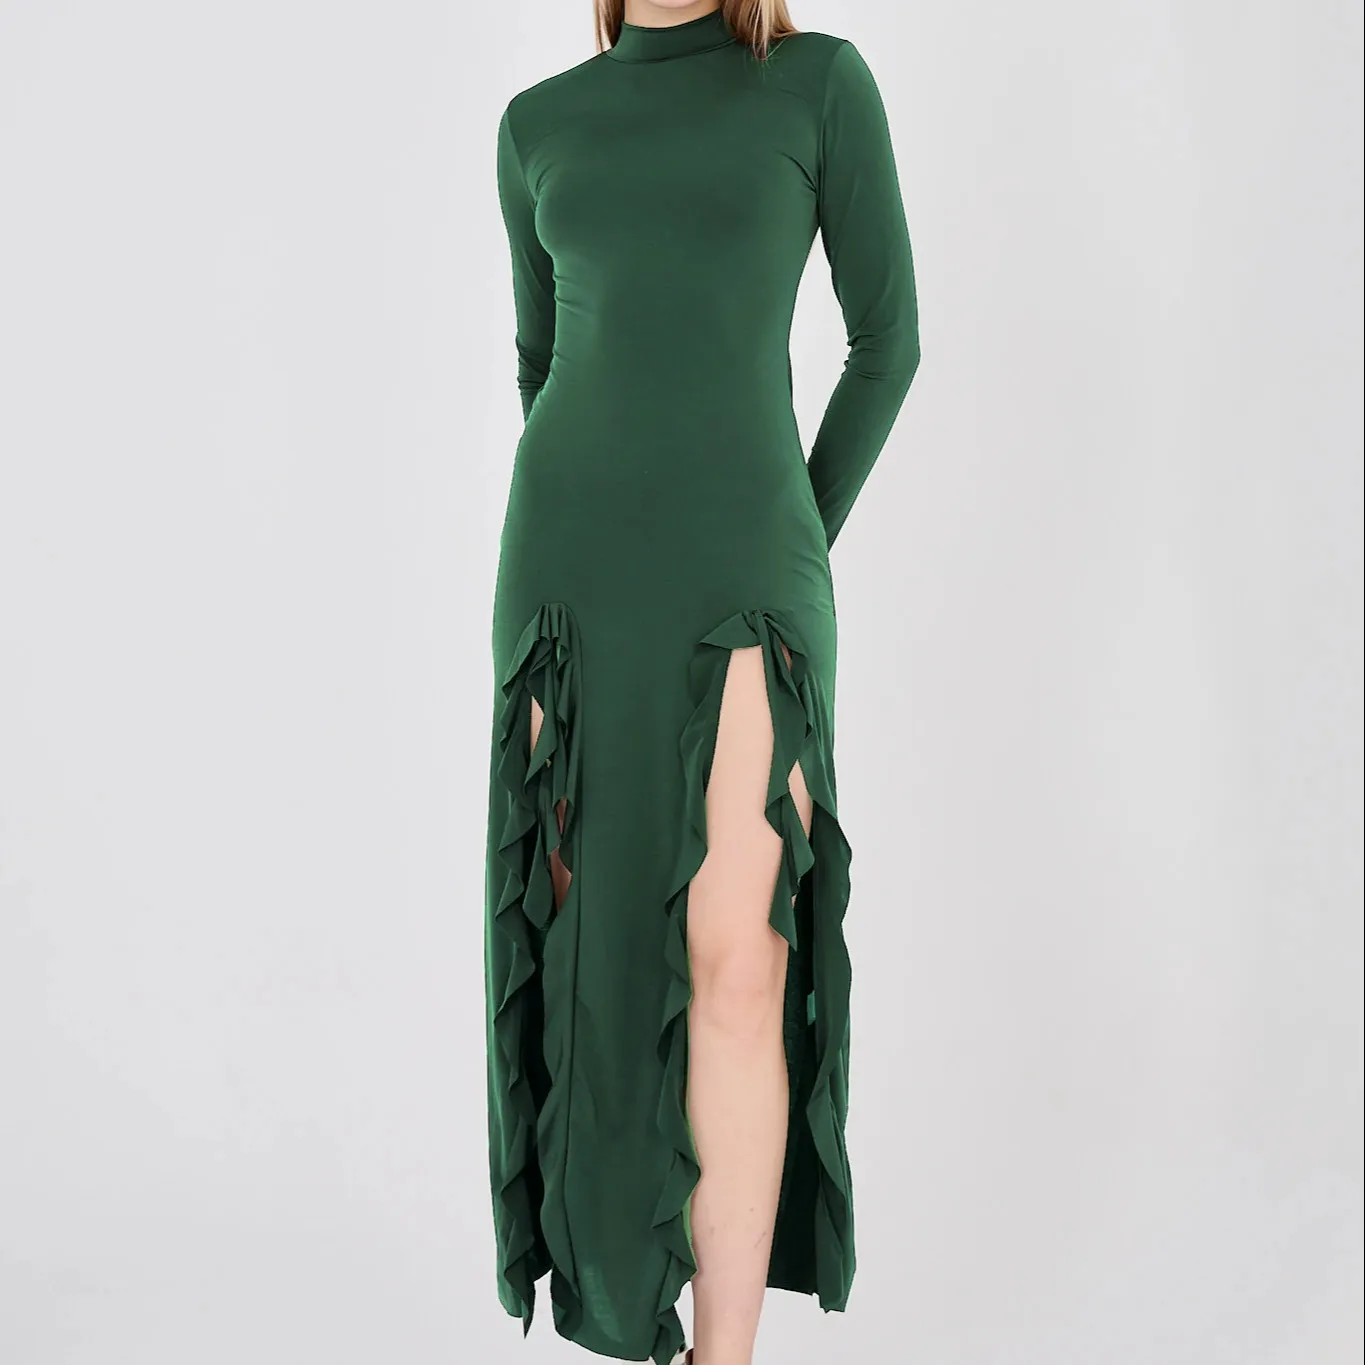 दोनों तरफ की स्लिट वाली पन्ना हरी लंबी आस्तीन वाली सैंडी ड्रेस, आकार के अनुरूप रेत रंग बेज रंग की